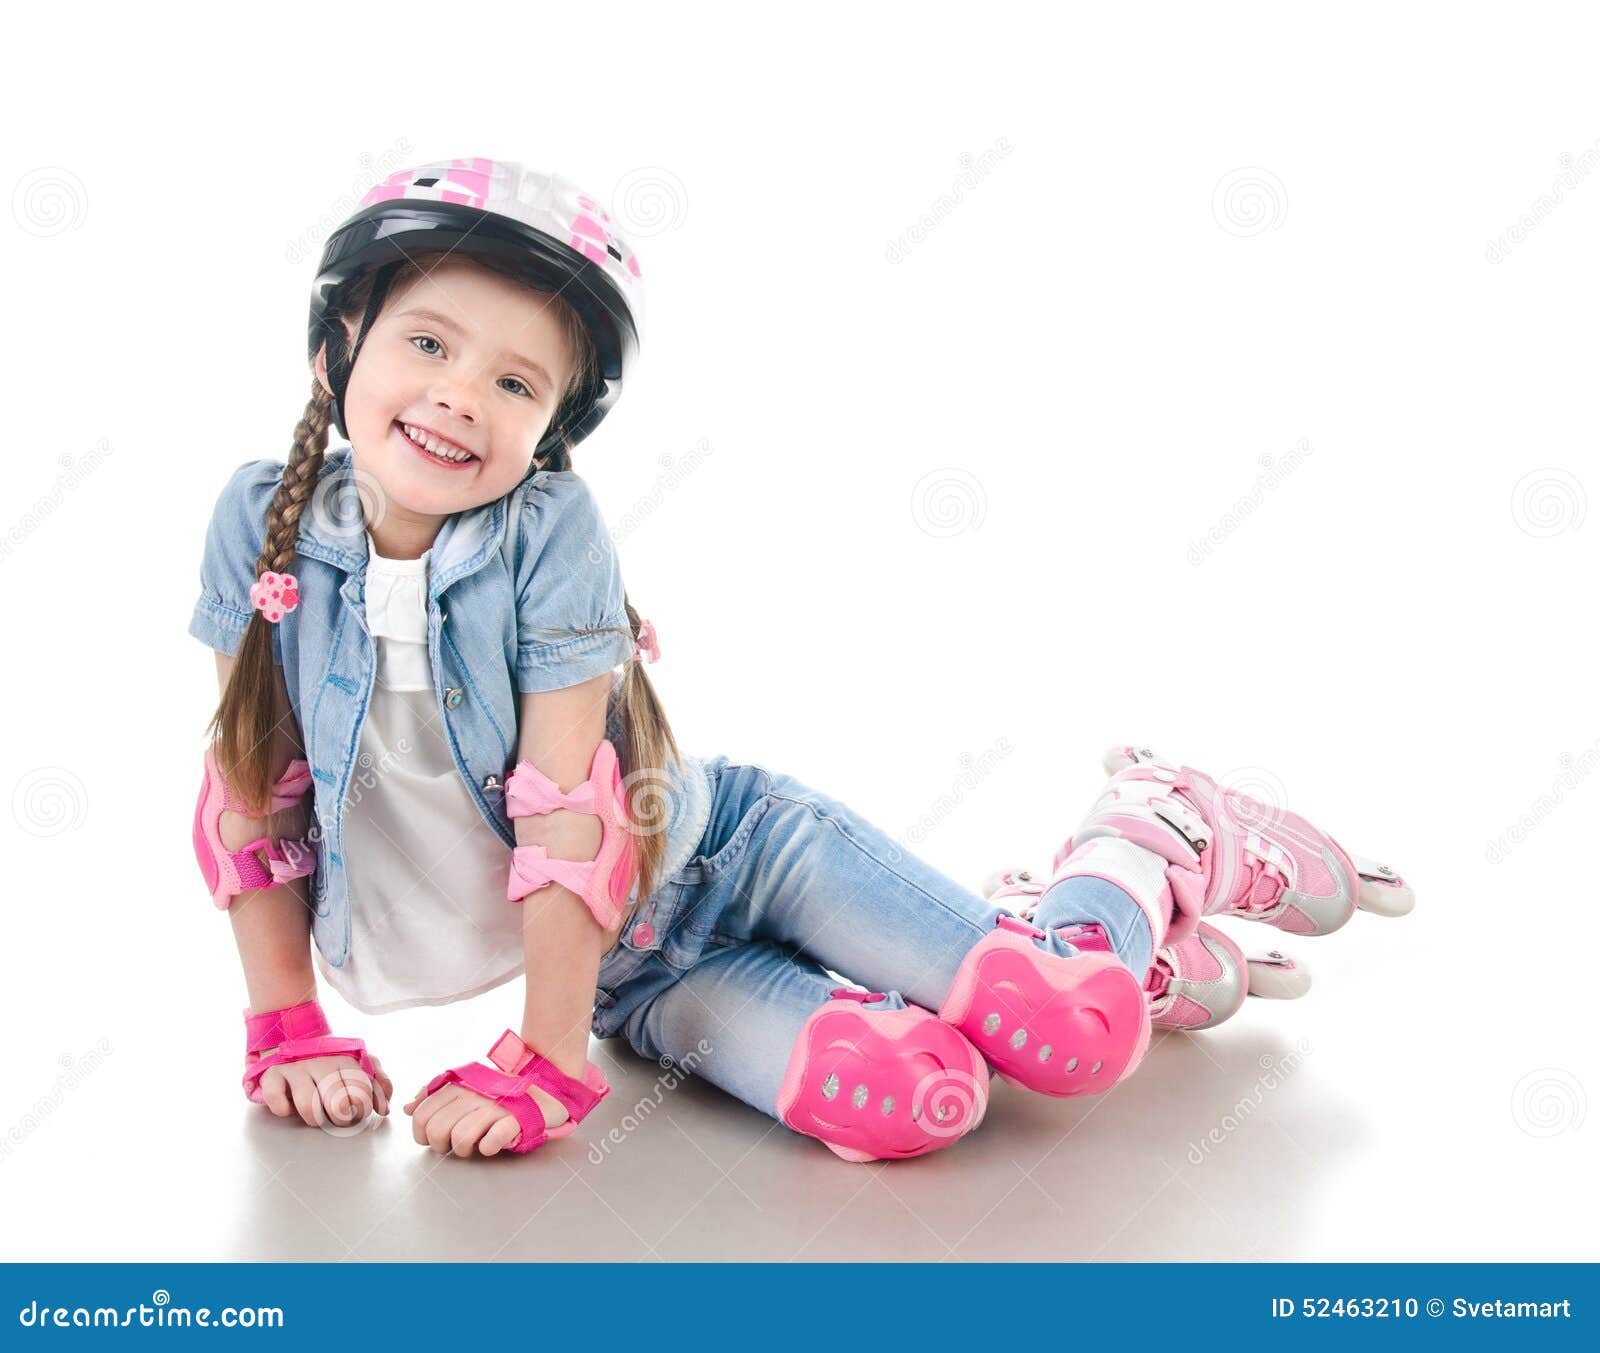 Ролики милашек. Ролики розовые для девочек. Ребенок катается на розовых роликах. Маленькая девочка в розовой кепке. Кукла с розовыми волосами на роликовых коньках.